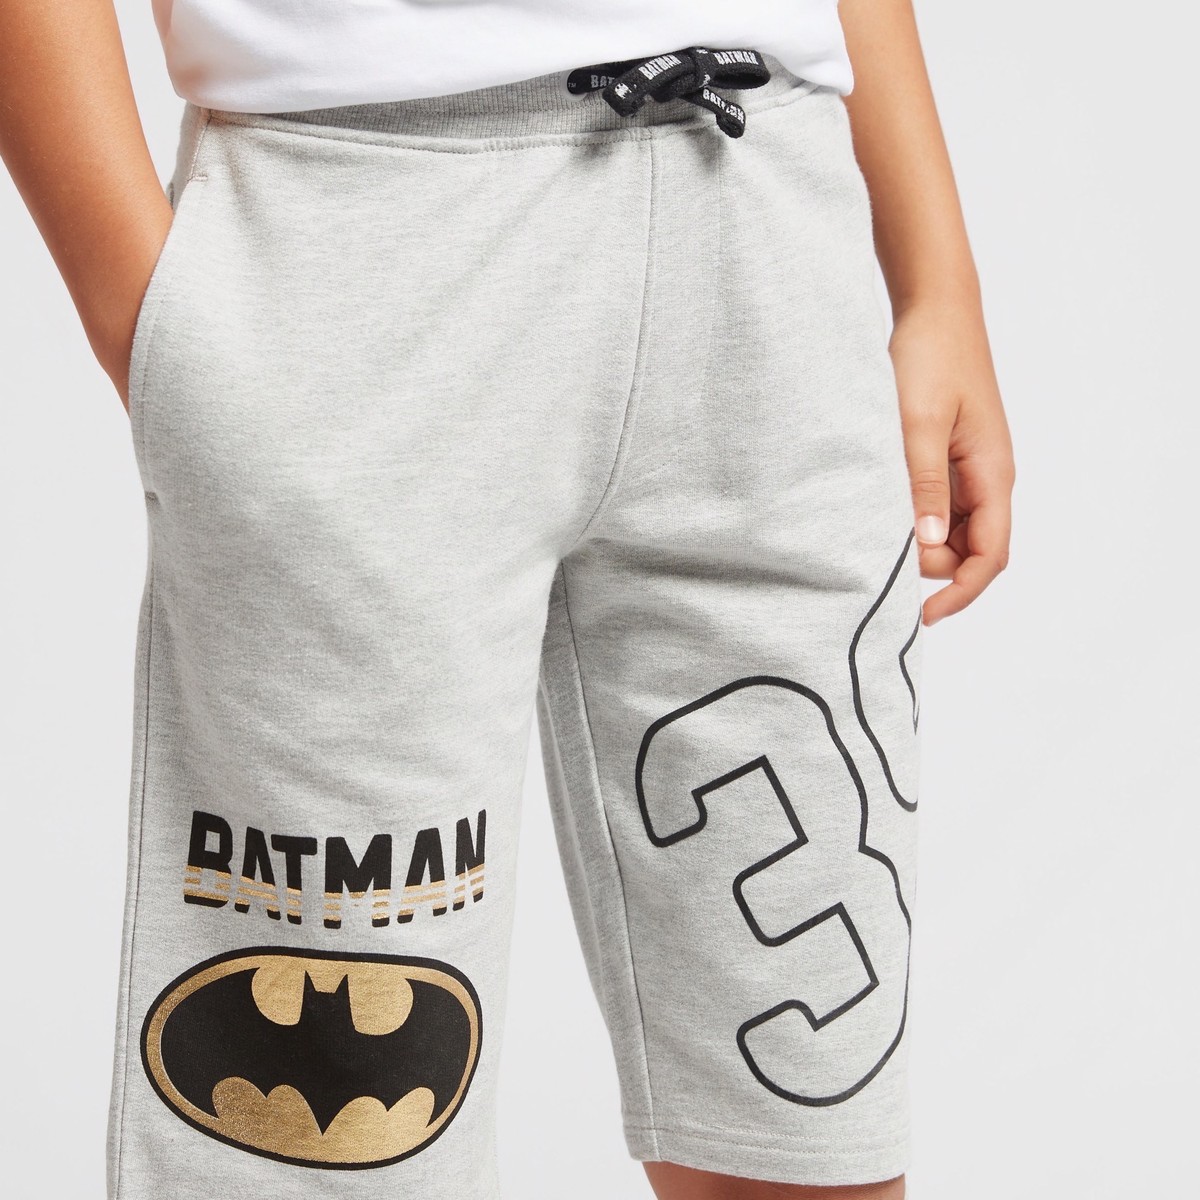 Batman Print Shorts with Pockets and Drawstring 2